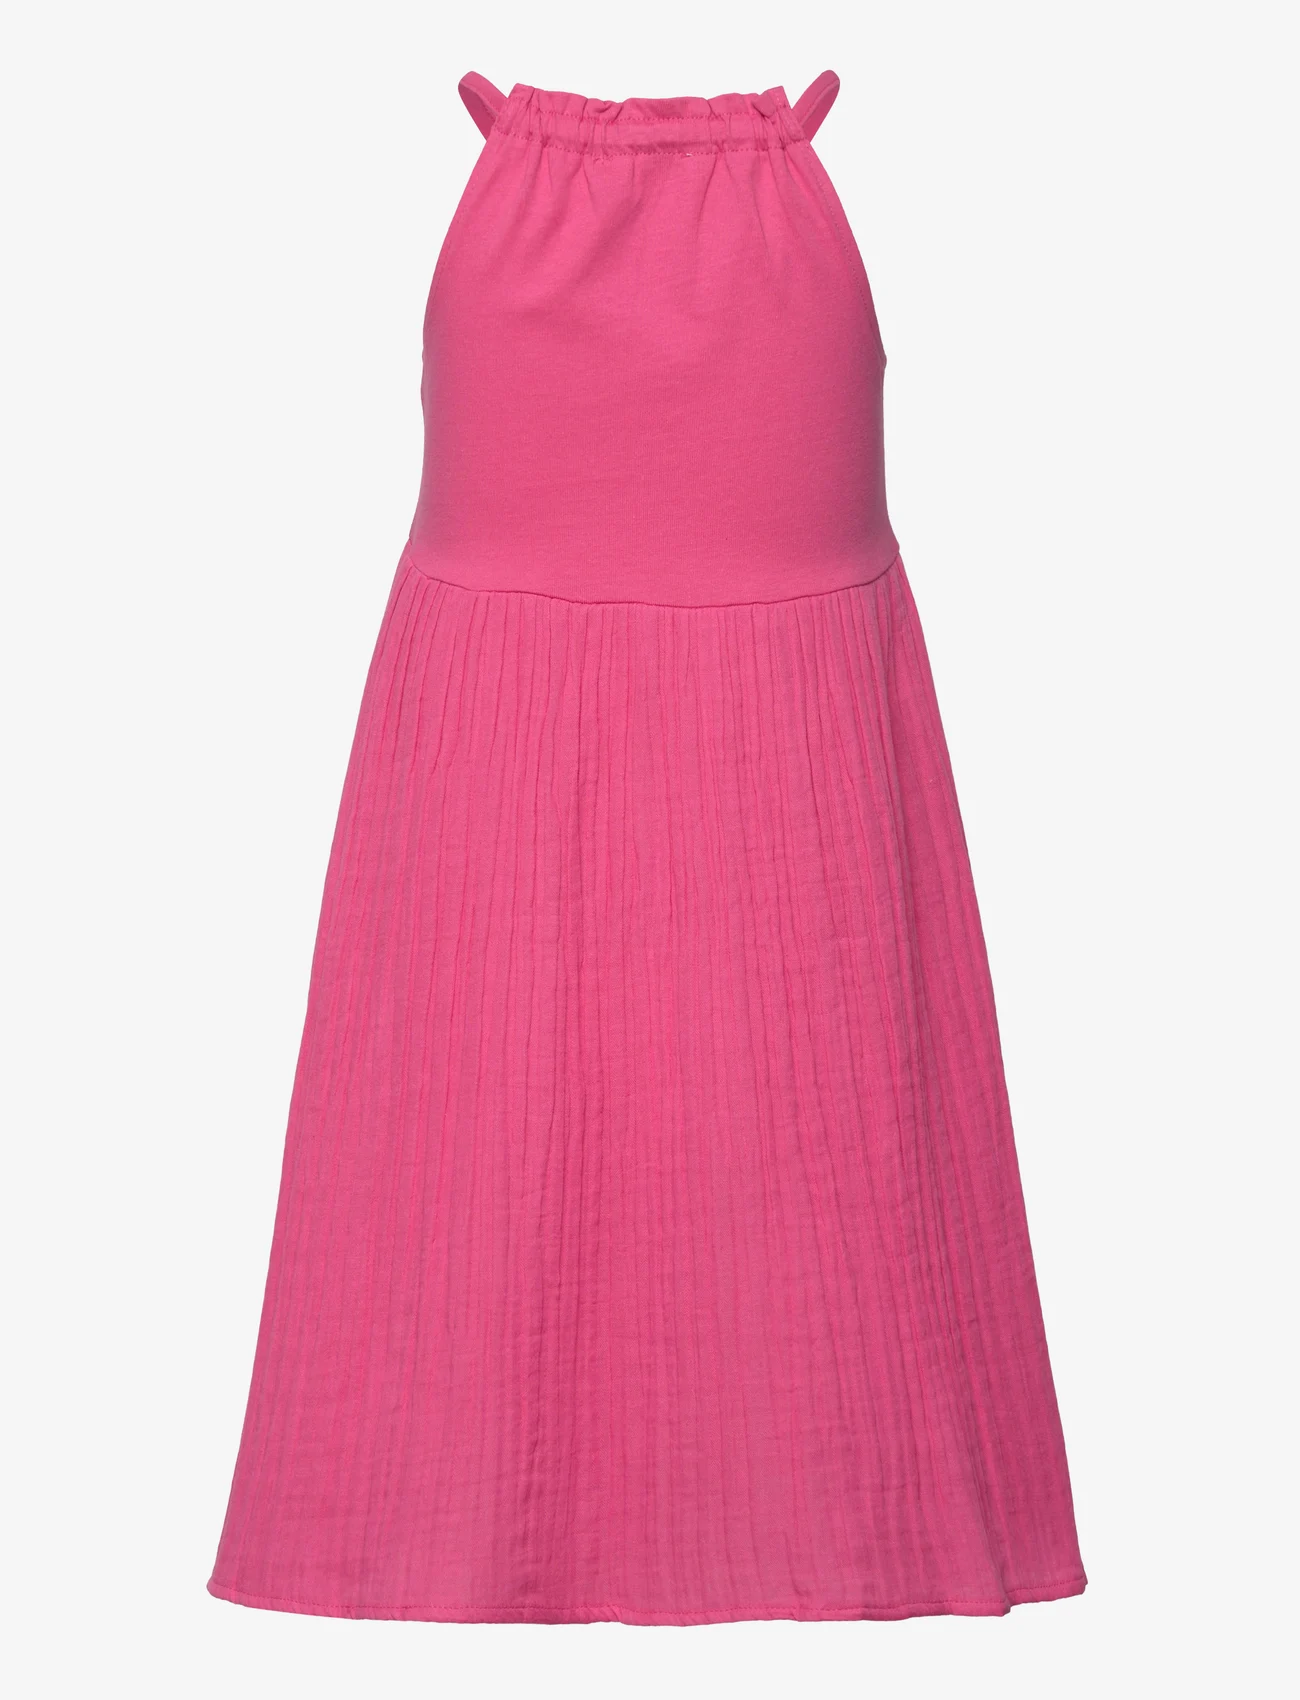 Mango - Cotton-blend dress - Ärmlösa vardagsklänningar - bright pink - 1